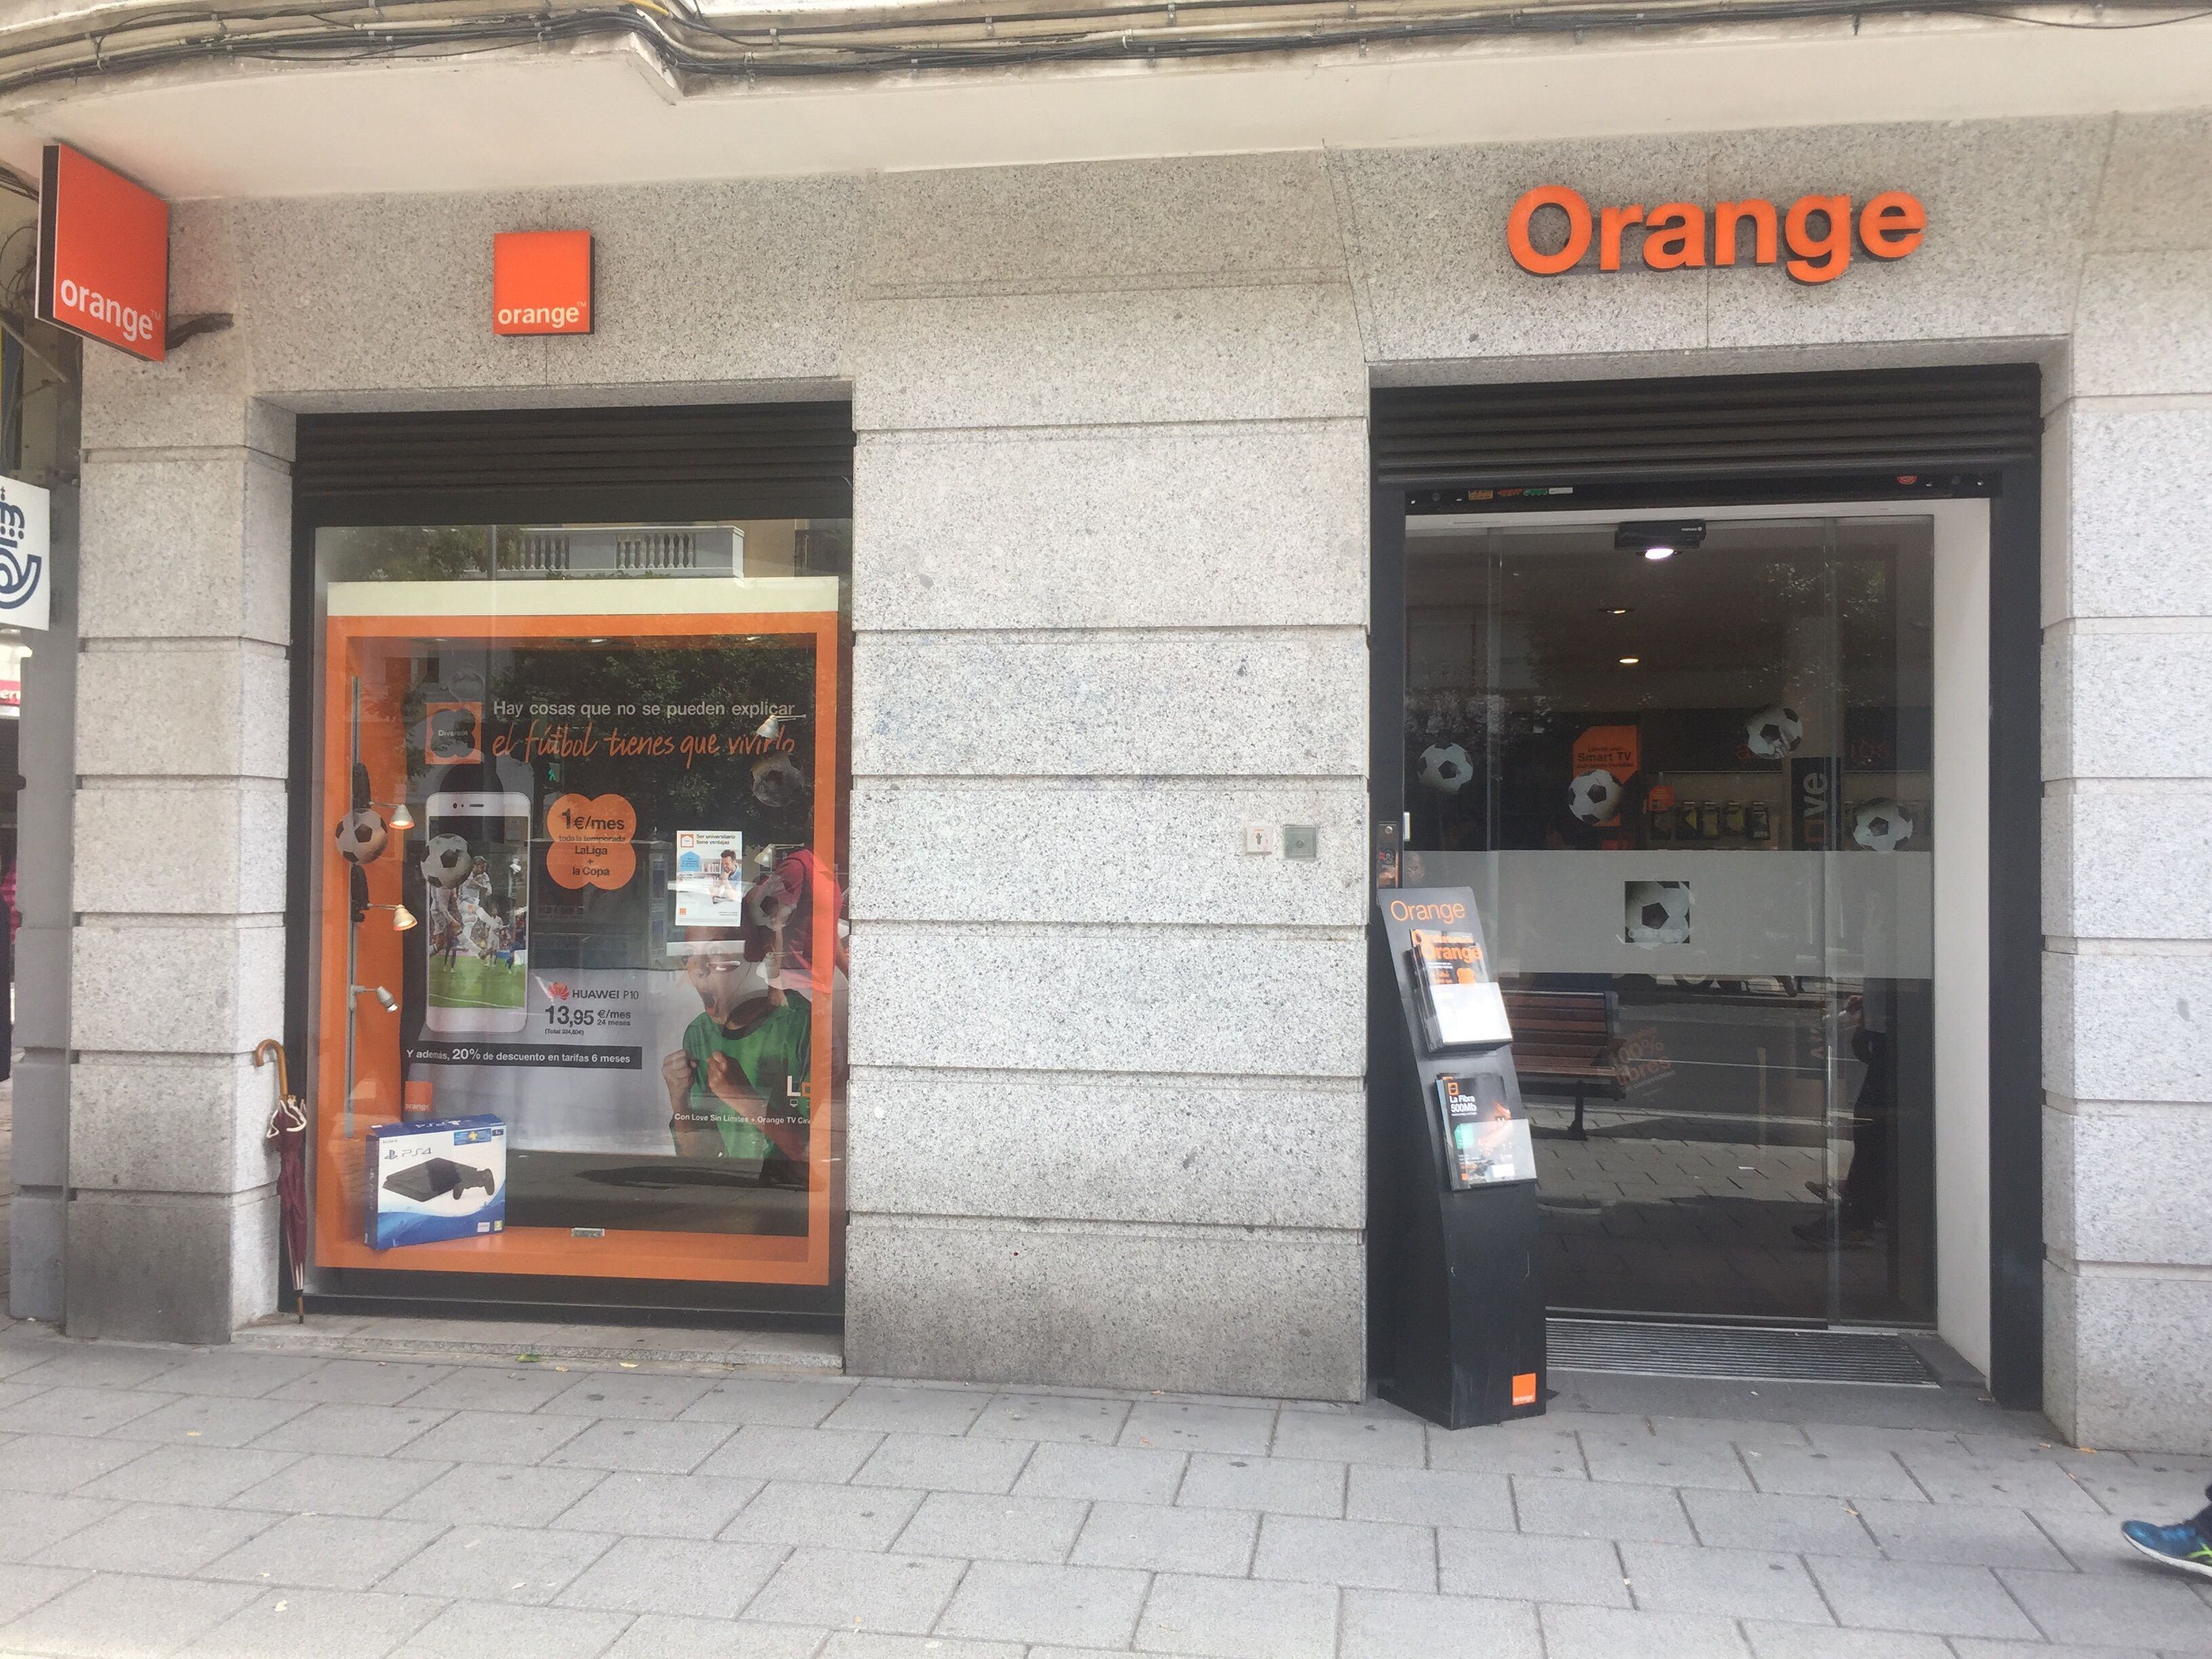 29-08-2017 Tienda de OrangePOLITICA EUROPA ESPAÑA ECONOMIA